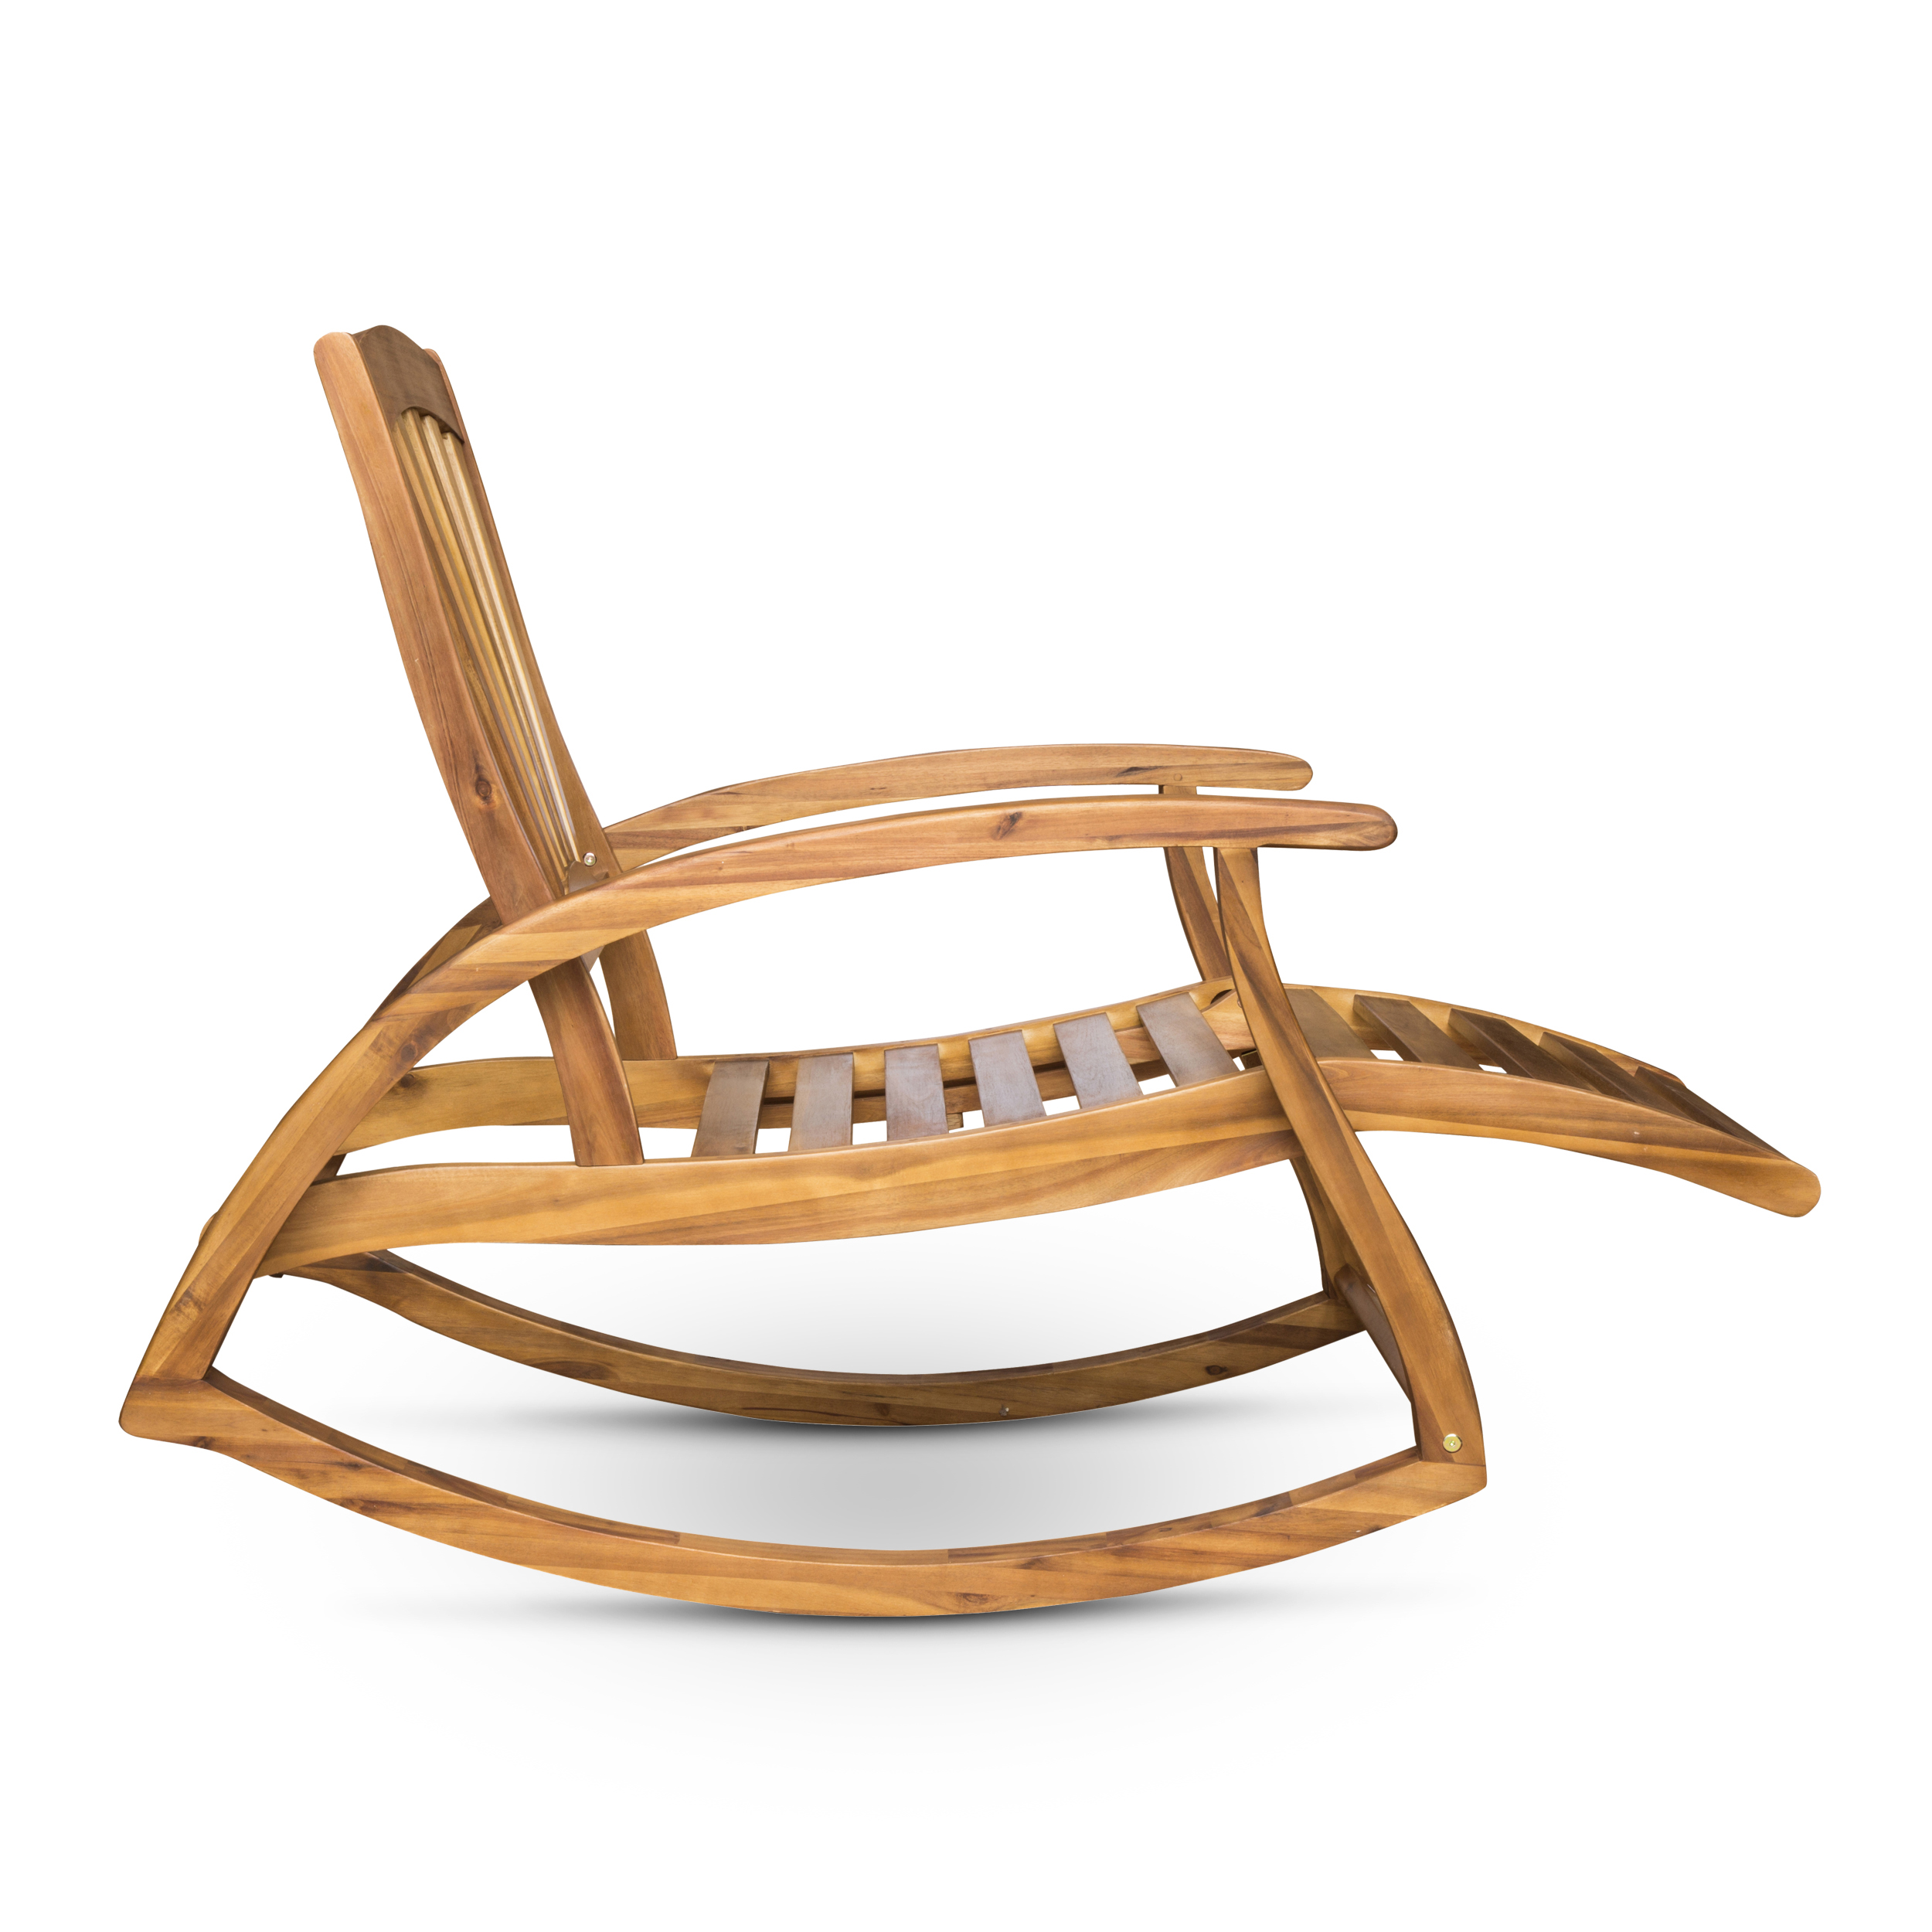 Kaya Outdoor Reclining Acacia Wood Rocking Chairs, Set of 2, Teak - image 5 of 7